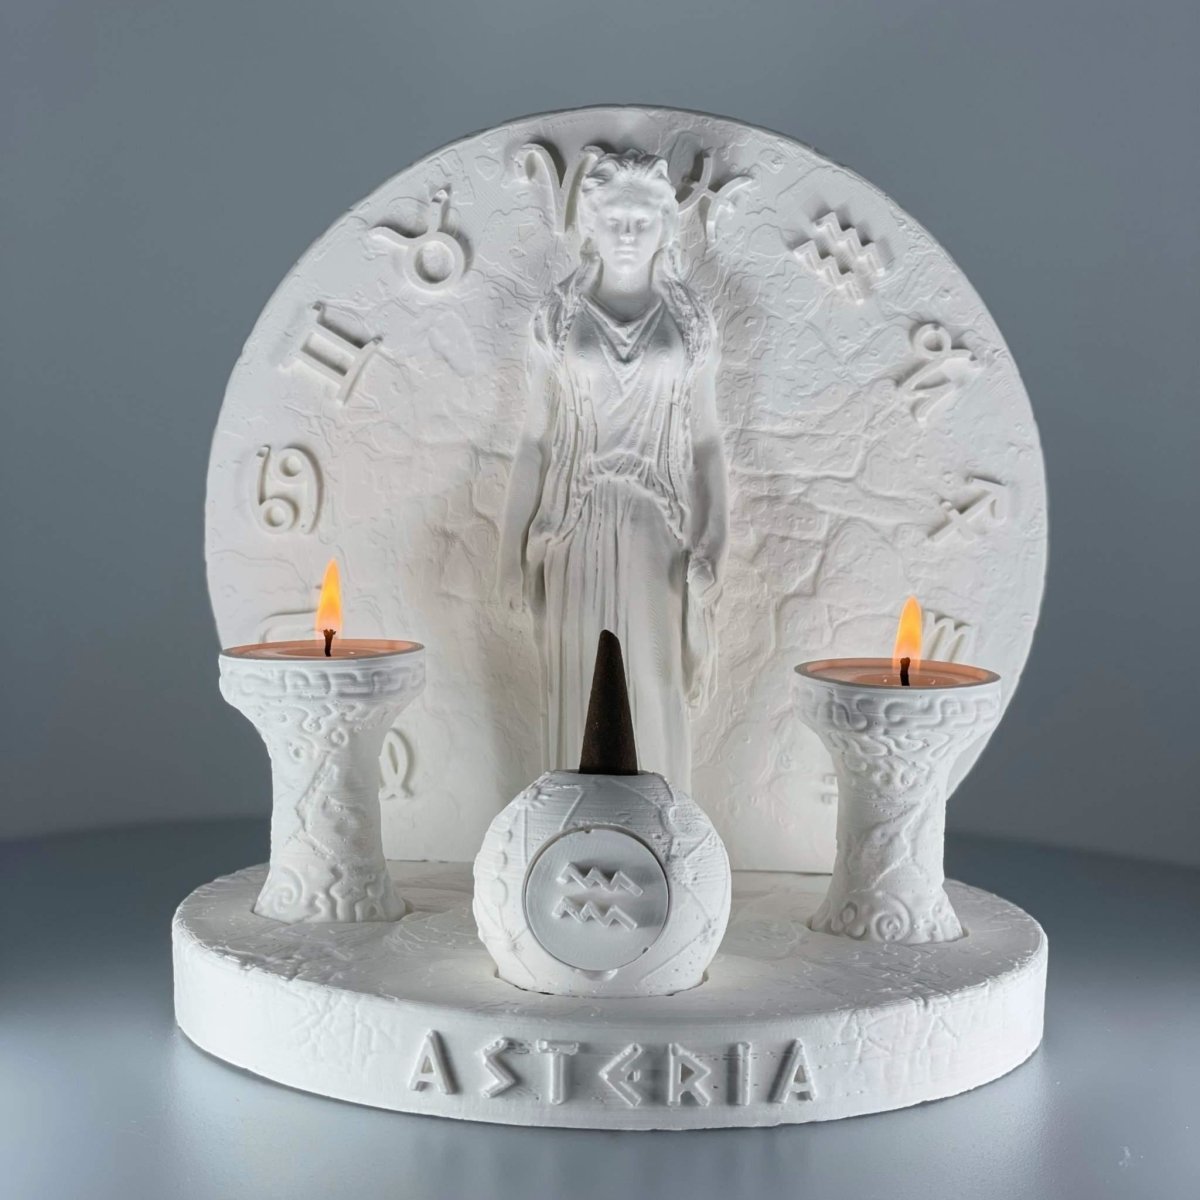 Asteria Incense - Artchi